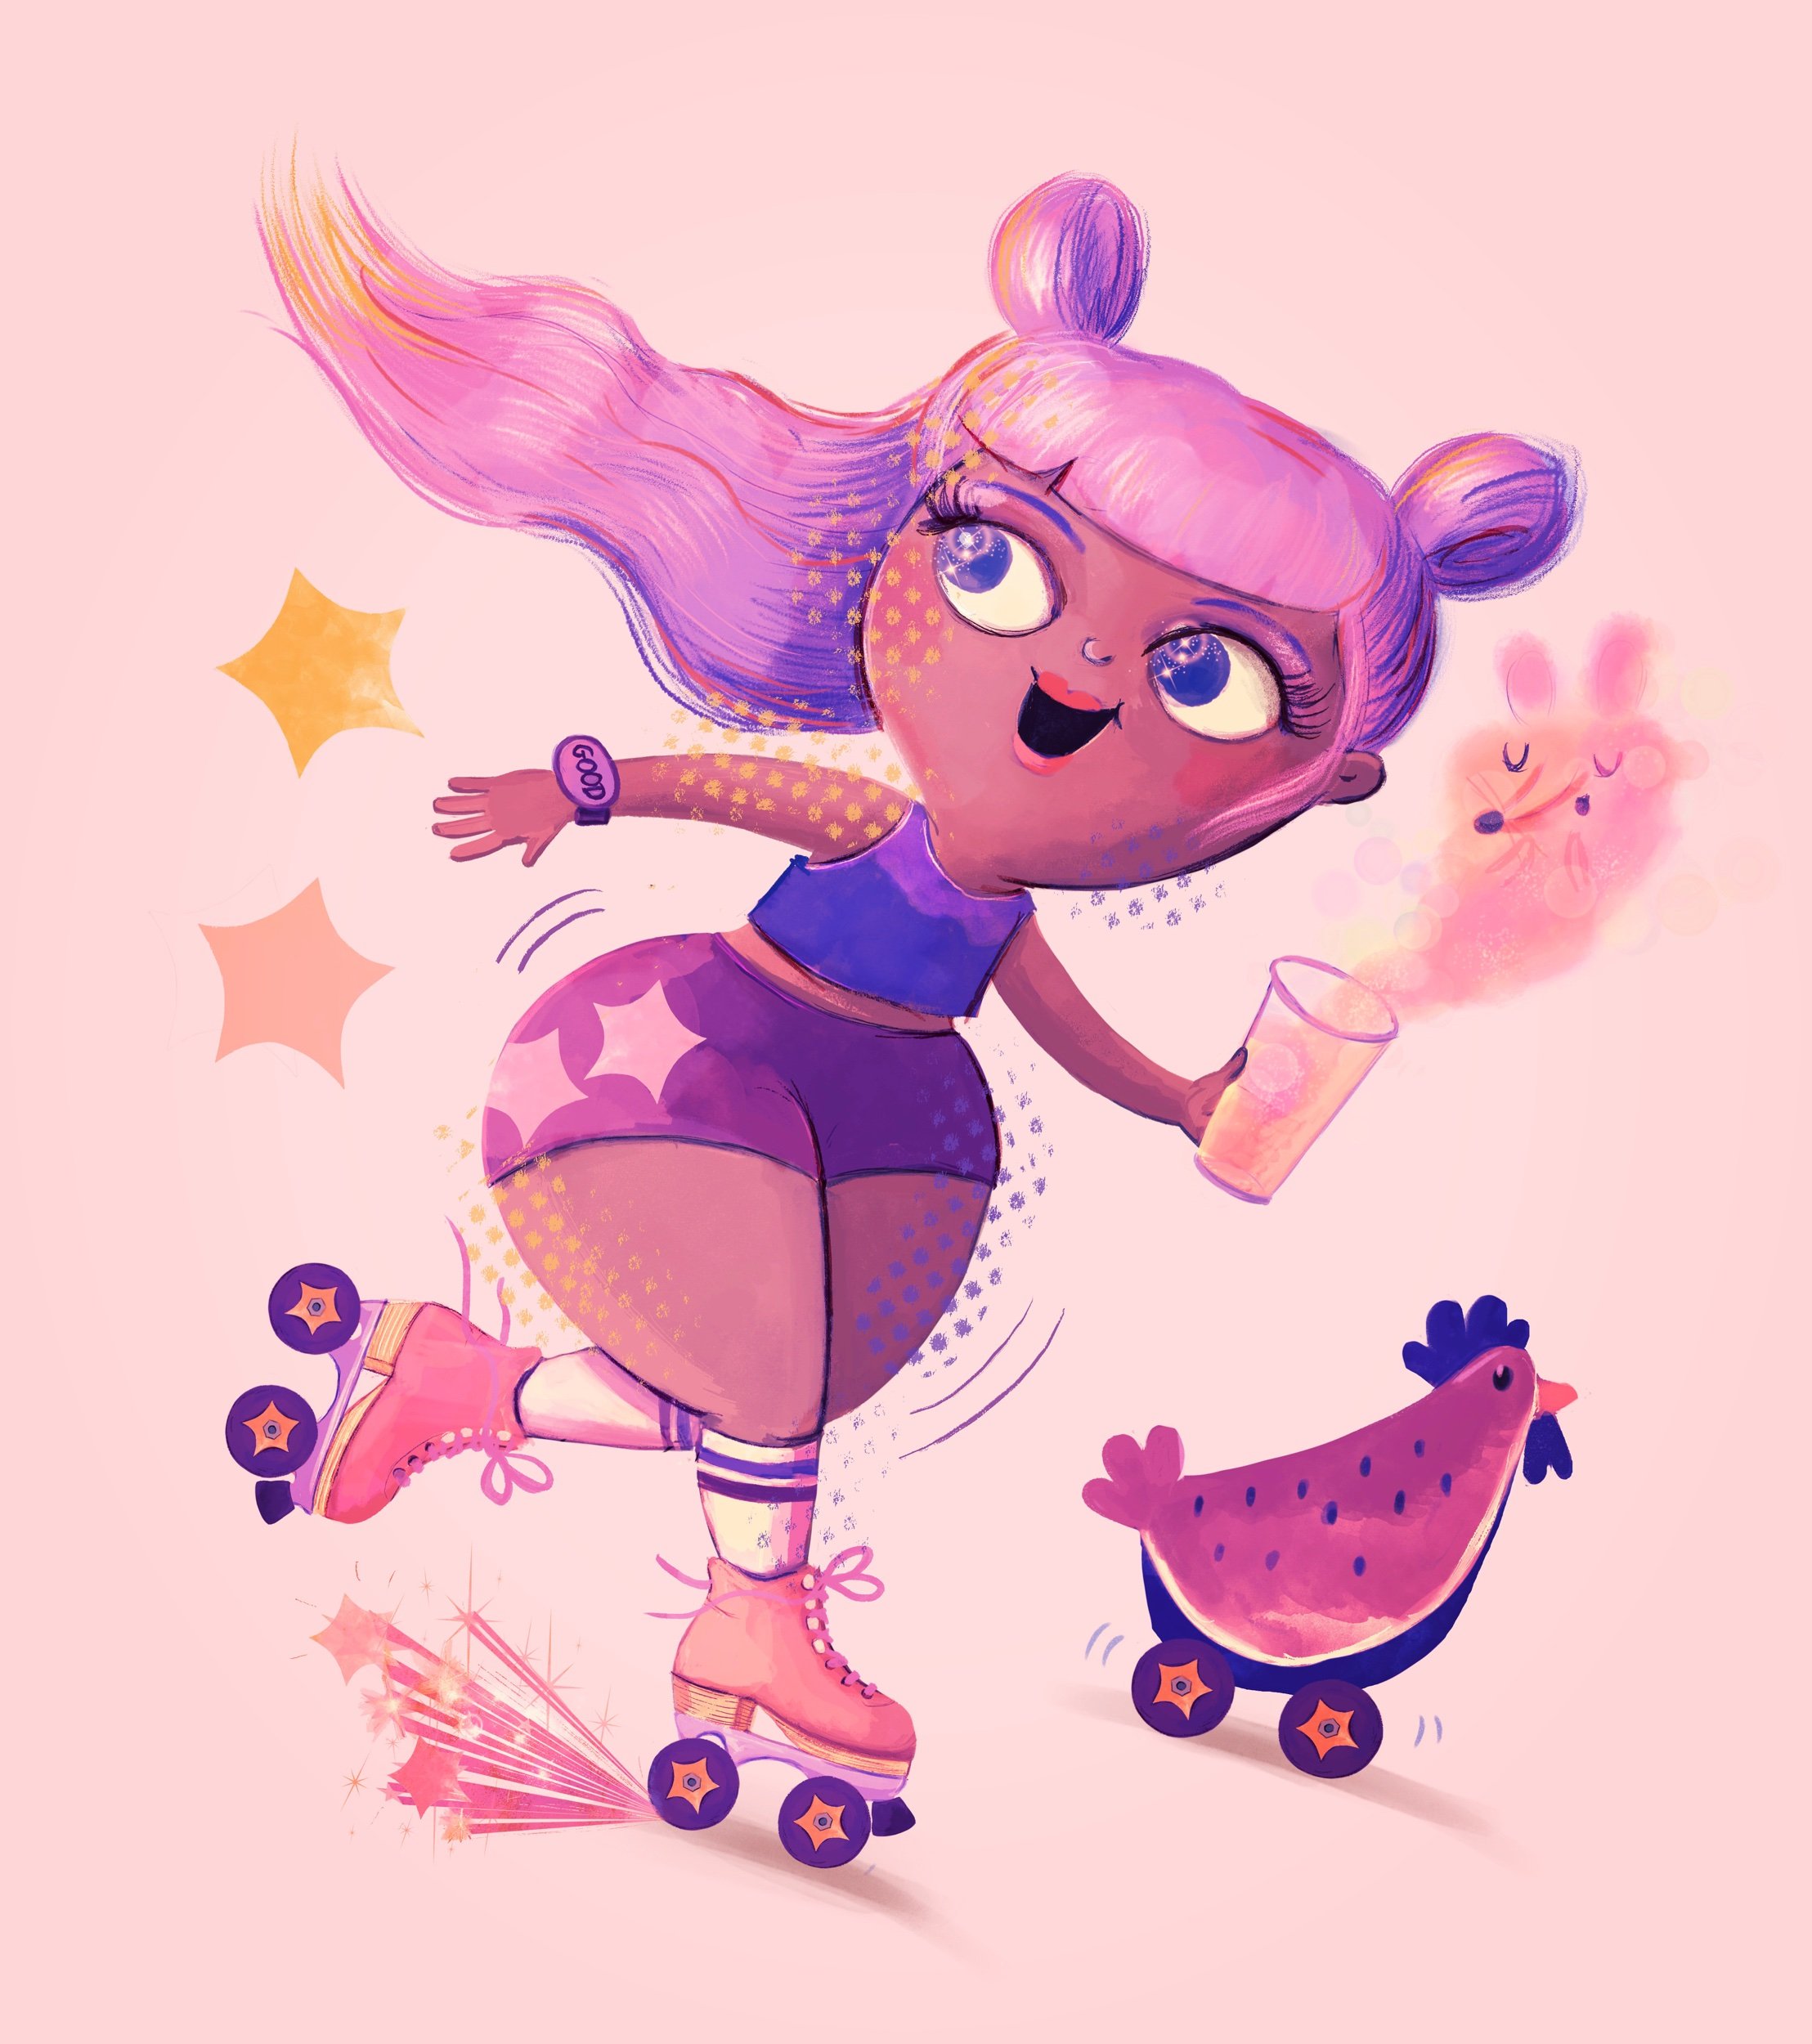 Roller skate girl illustration